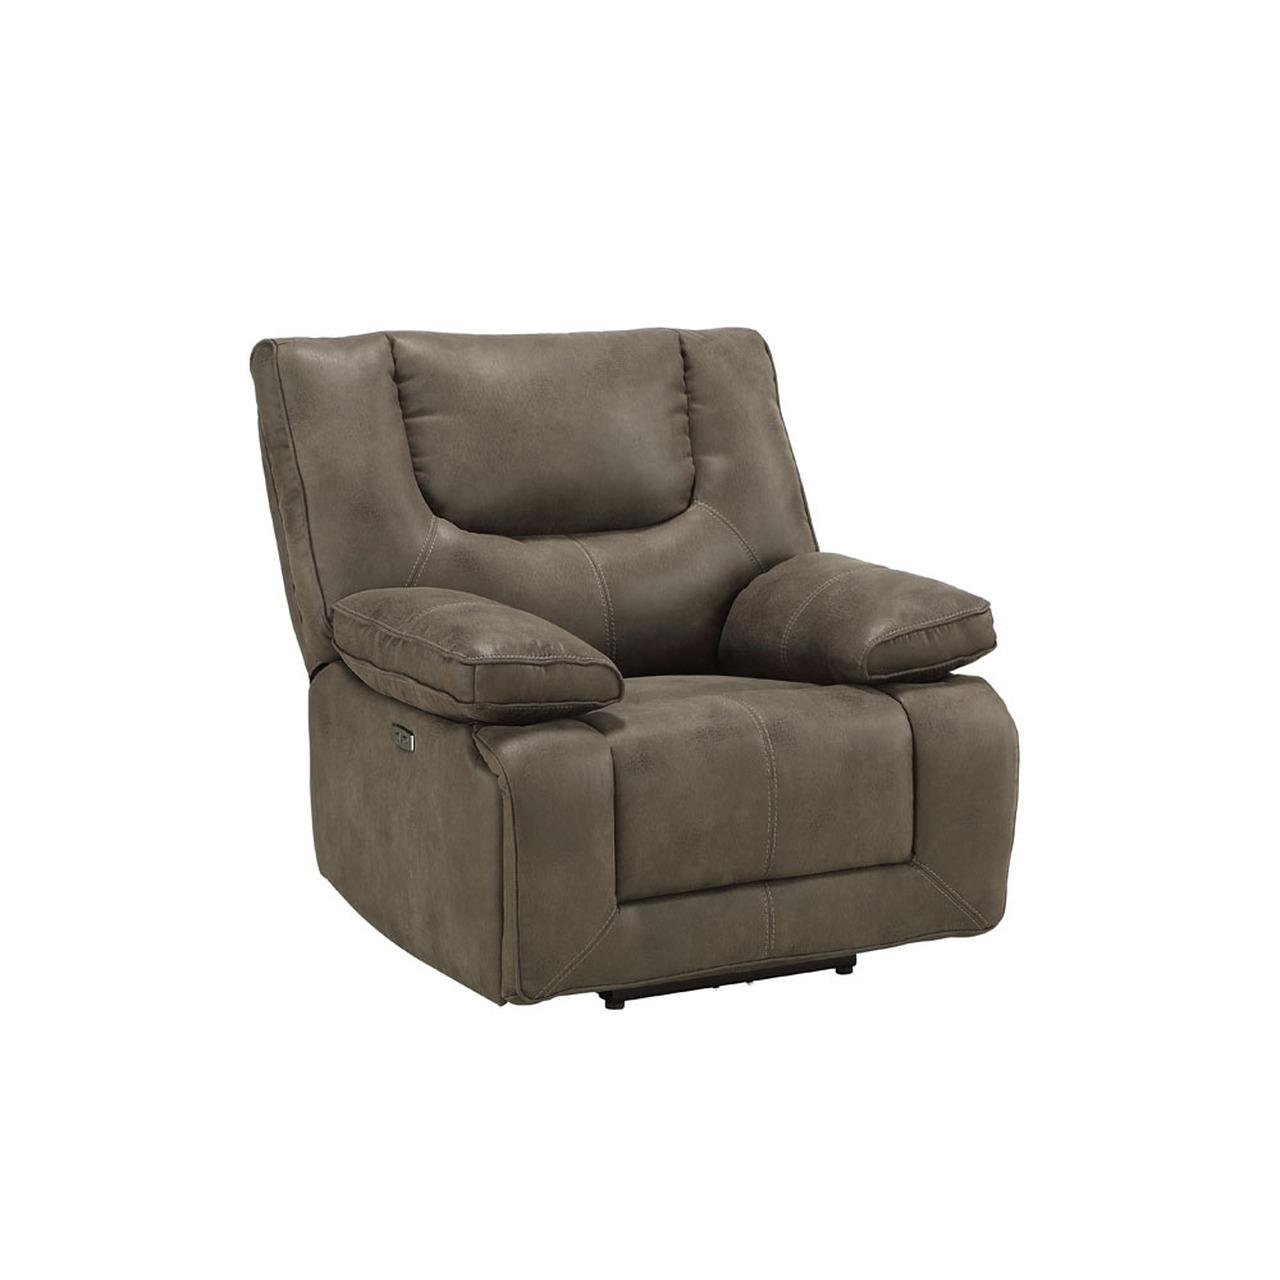 

    
54895-3pcs Contemporary Dark Gray Leather Power Sofa + Loveseat + Recliner by Acme Harumi 54895-3pcs
